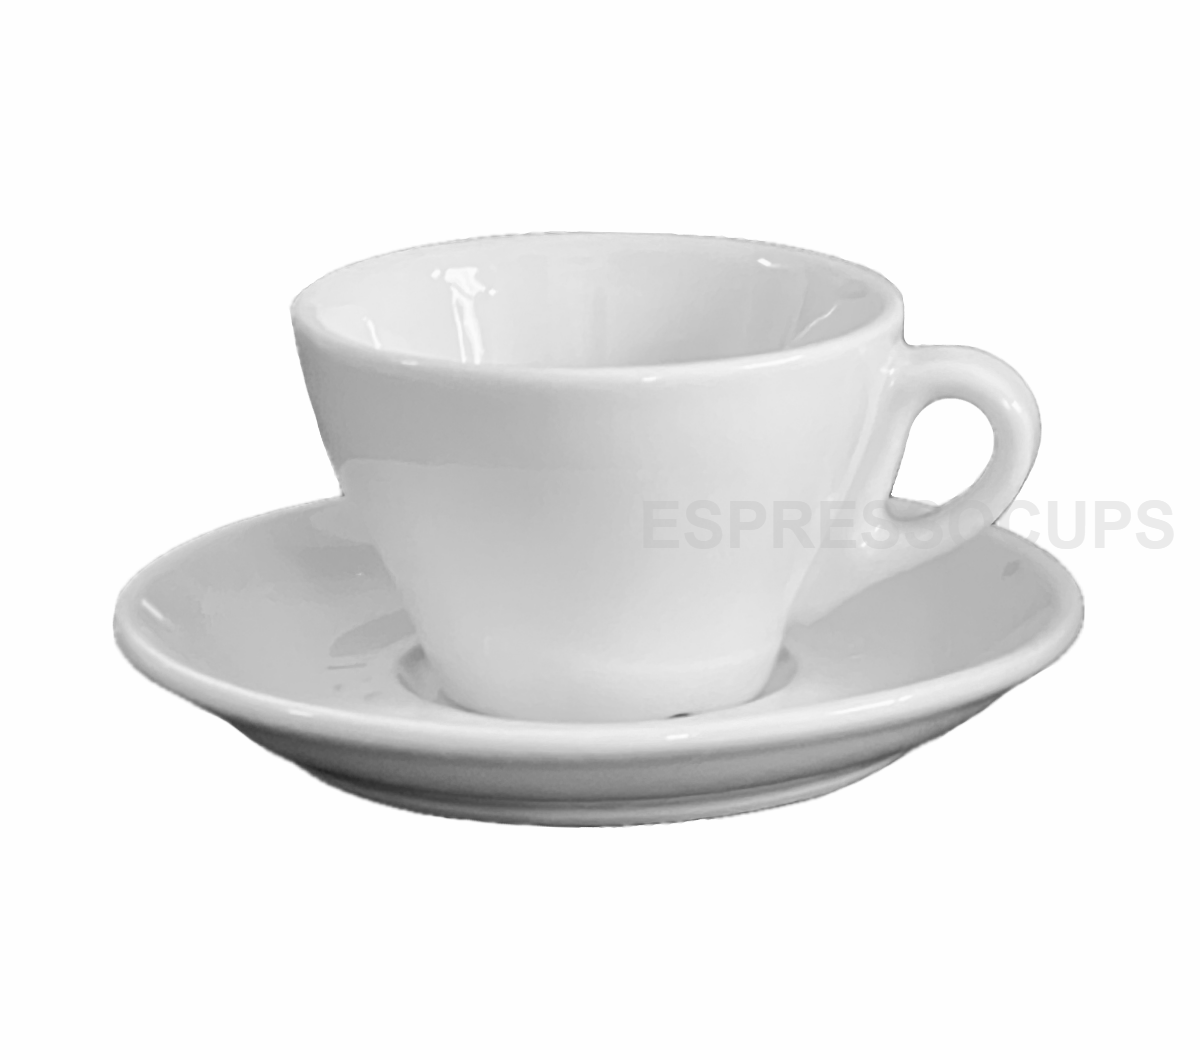 "MODENA" Cappuccino Cups - white